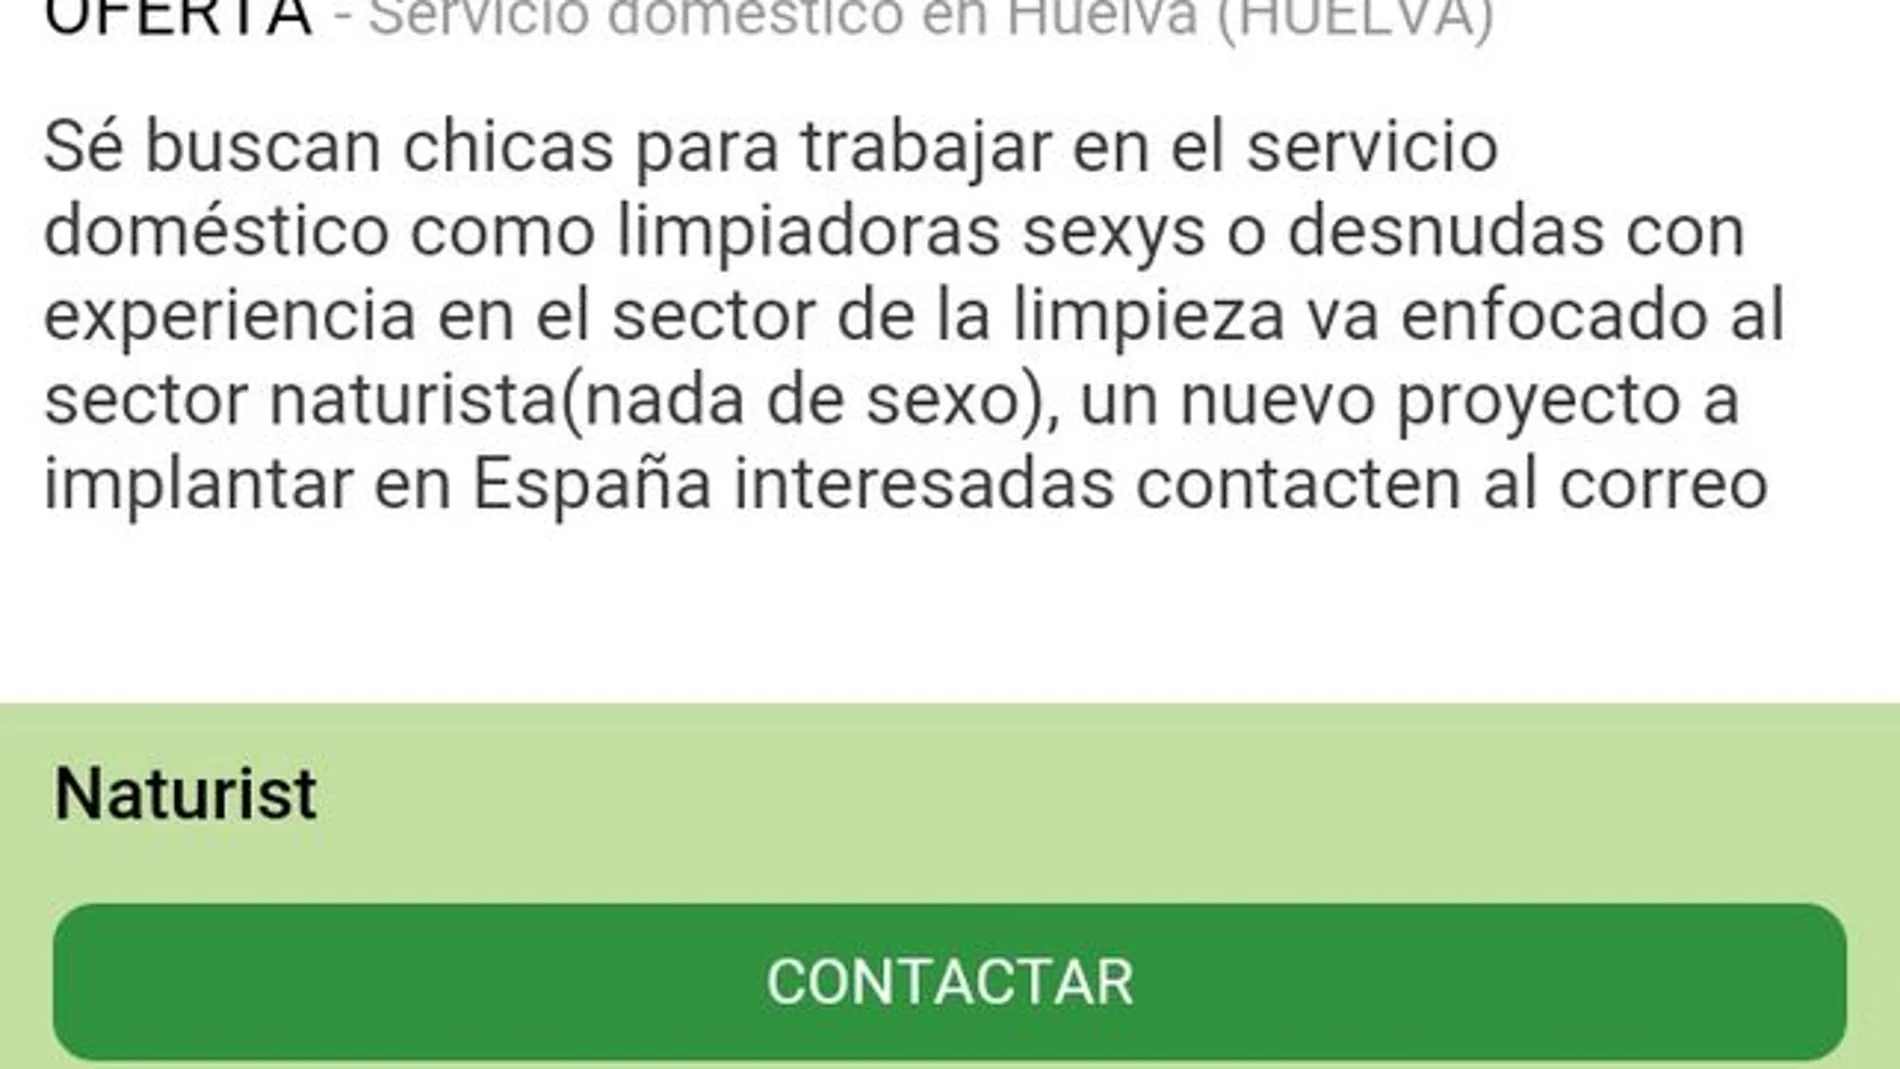 “Se buscan mujeres en Huelva para trabajar como limpiadoras sexys”